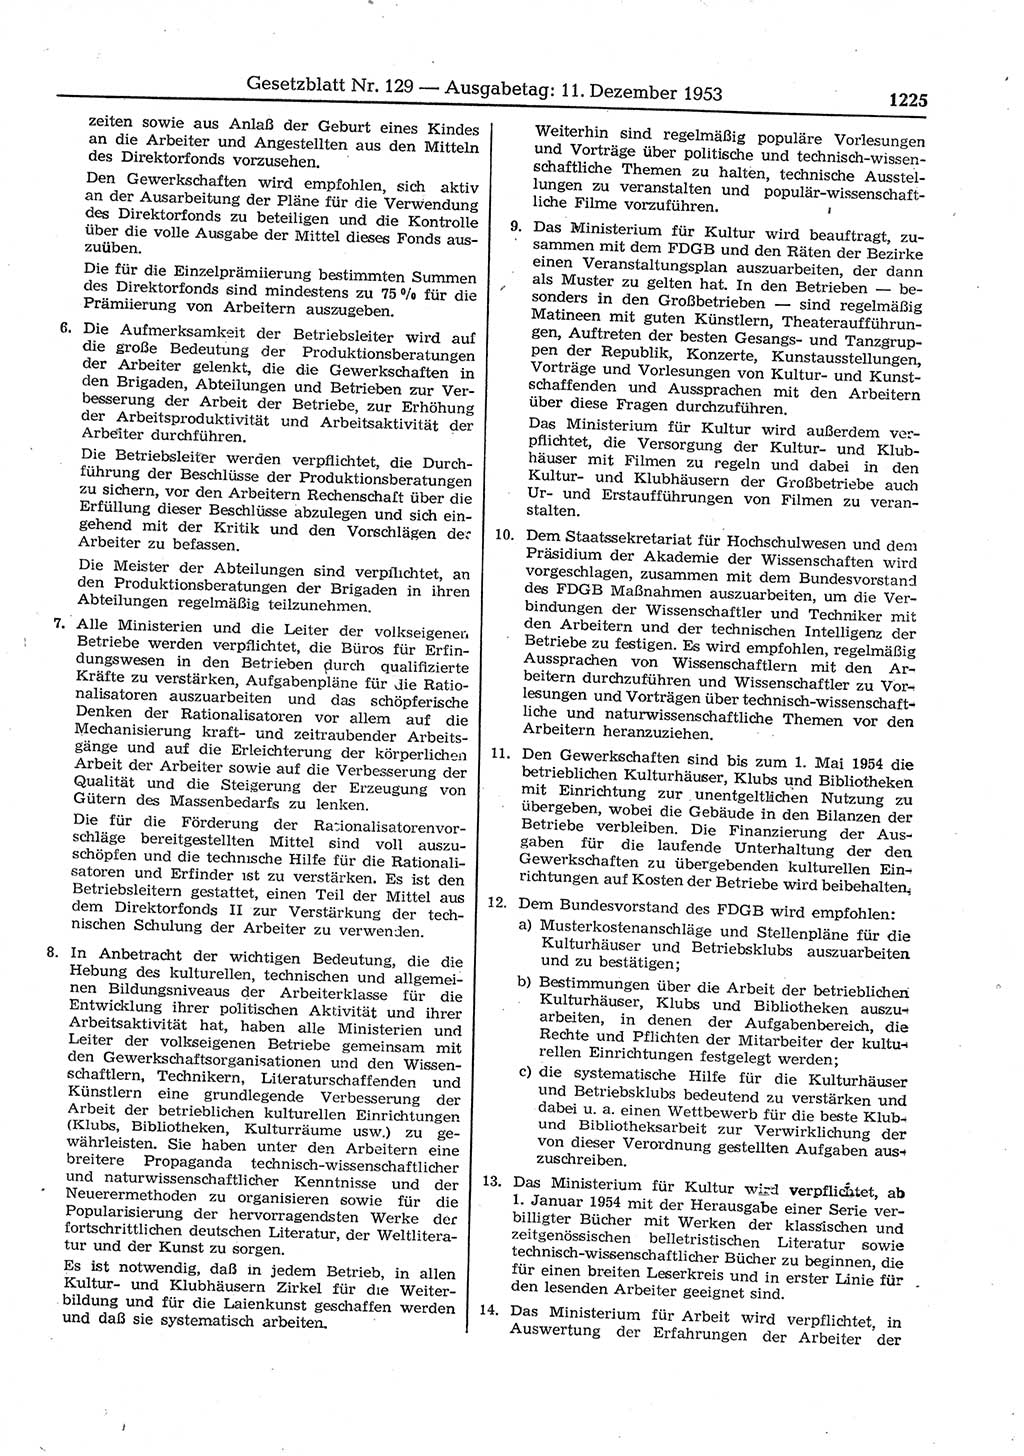 Gesetzblatt (GBl.) der Deutschen Demokratischen Republik (DDR) 1953, Seite 1225 (GBl. DDR 1953, S. 1225)